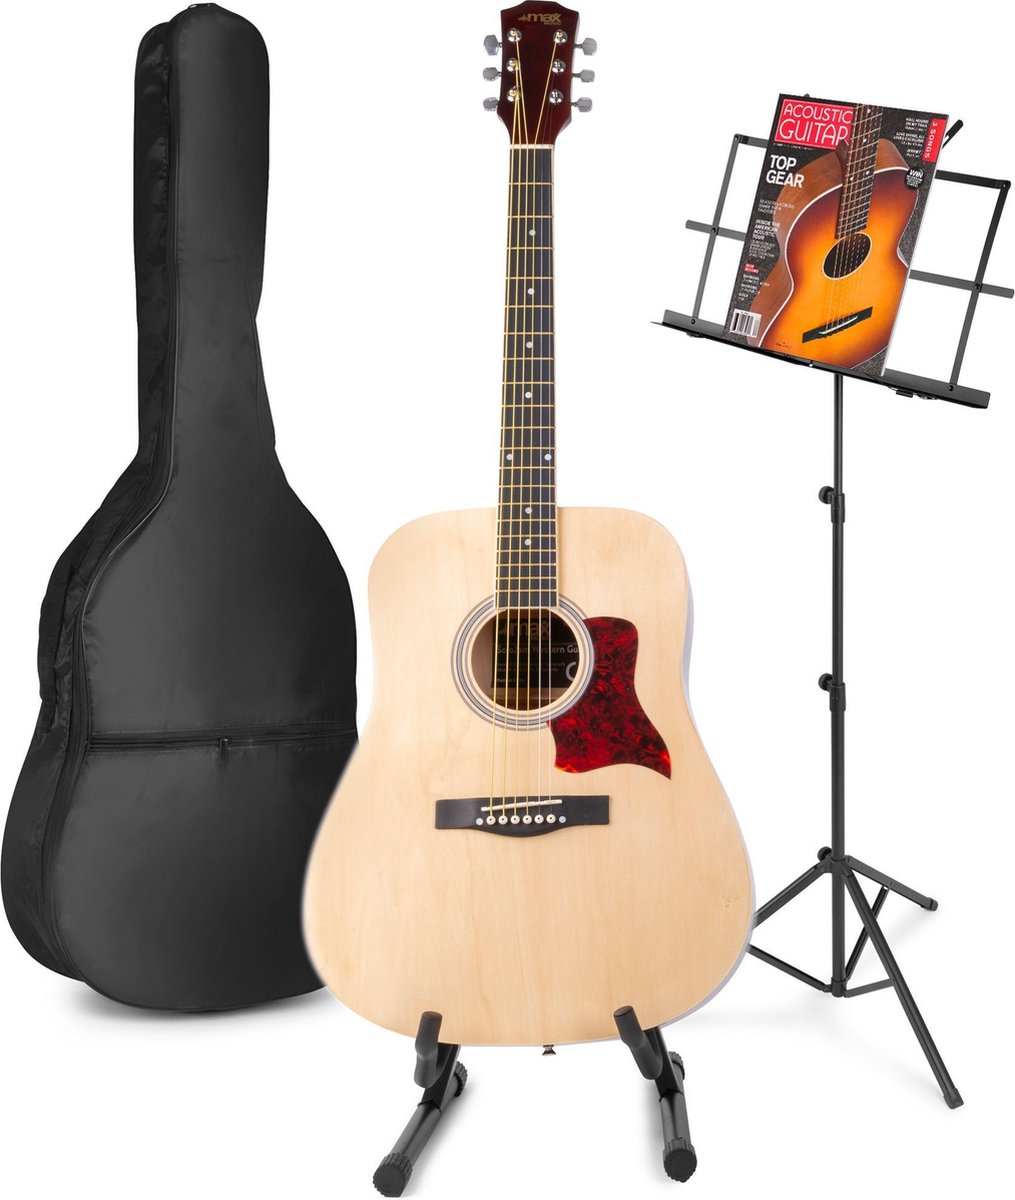 Akoestische gitaar voor beginners - MAX SoloJam Western gitaar - Incl. gitaar standaard, muziekstandaard, gitaar stemapparaat, gitaartas en 2x plectrum - Hout